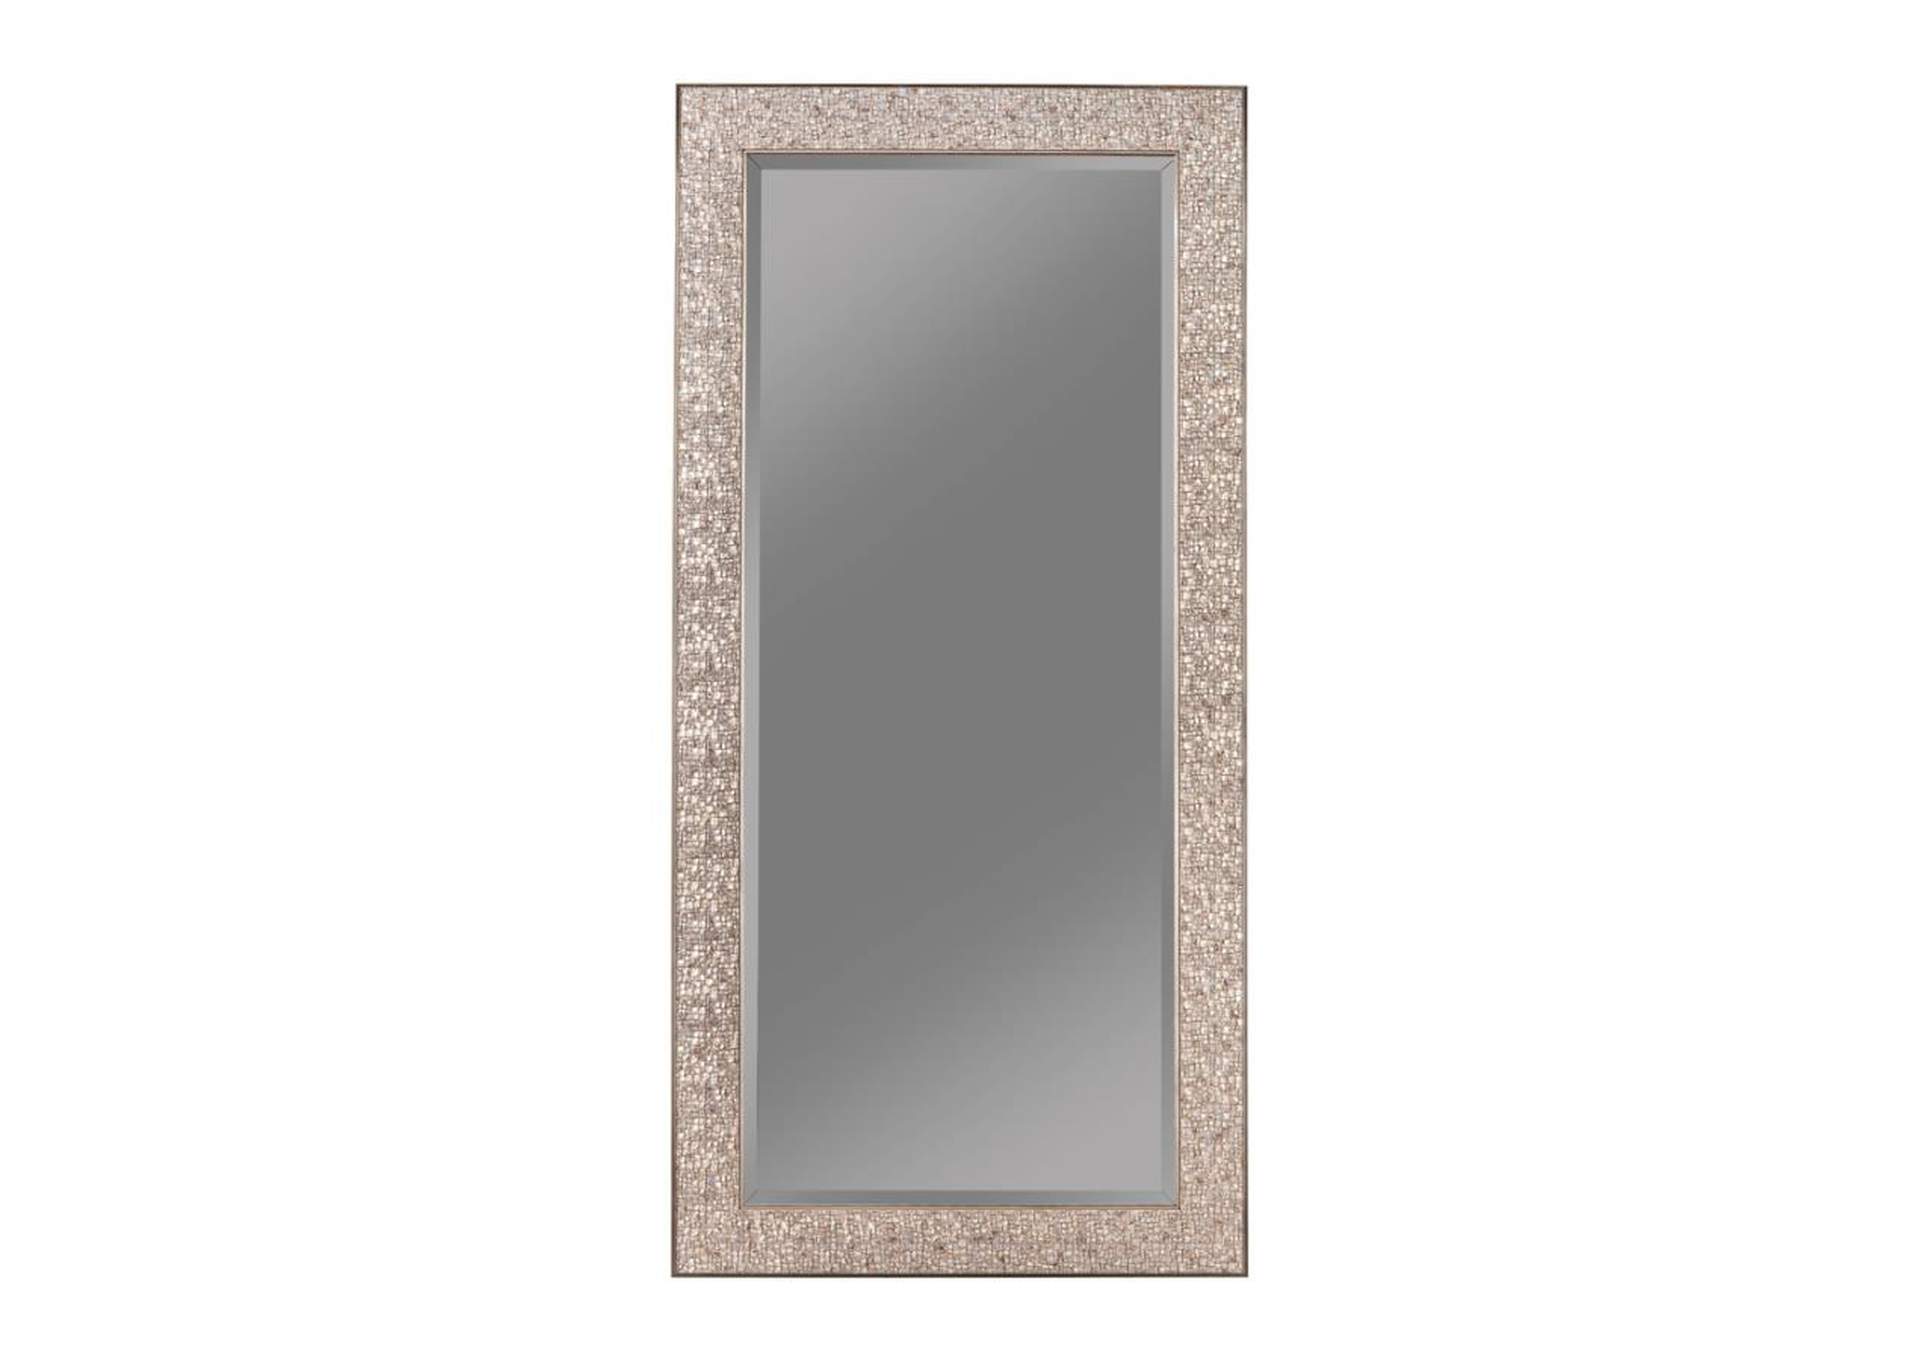 Rollins Rectangular Floor Mirror Silver Sparkle,Coaster Furniture